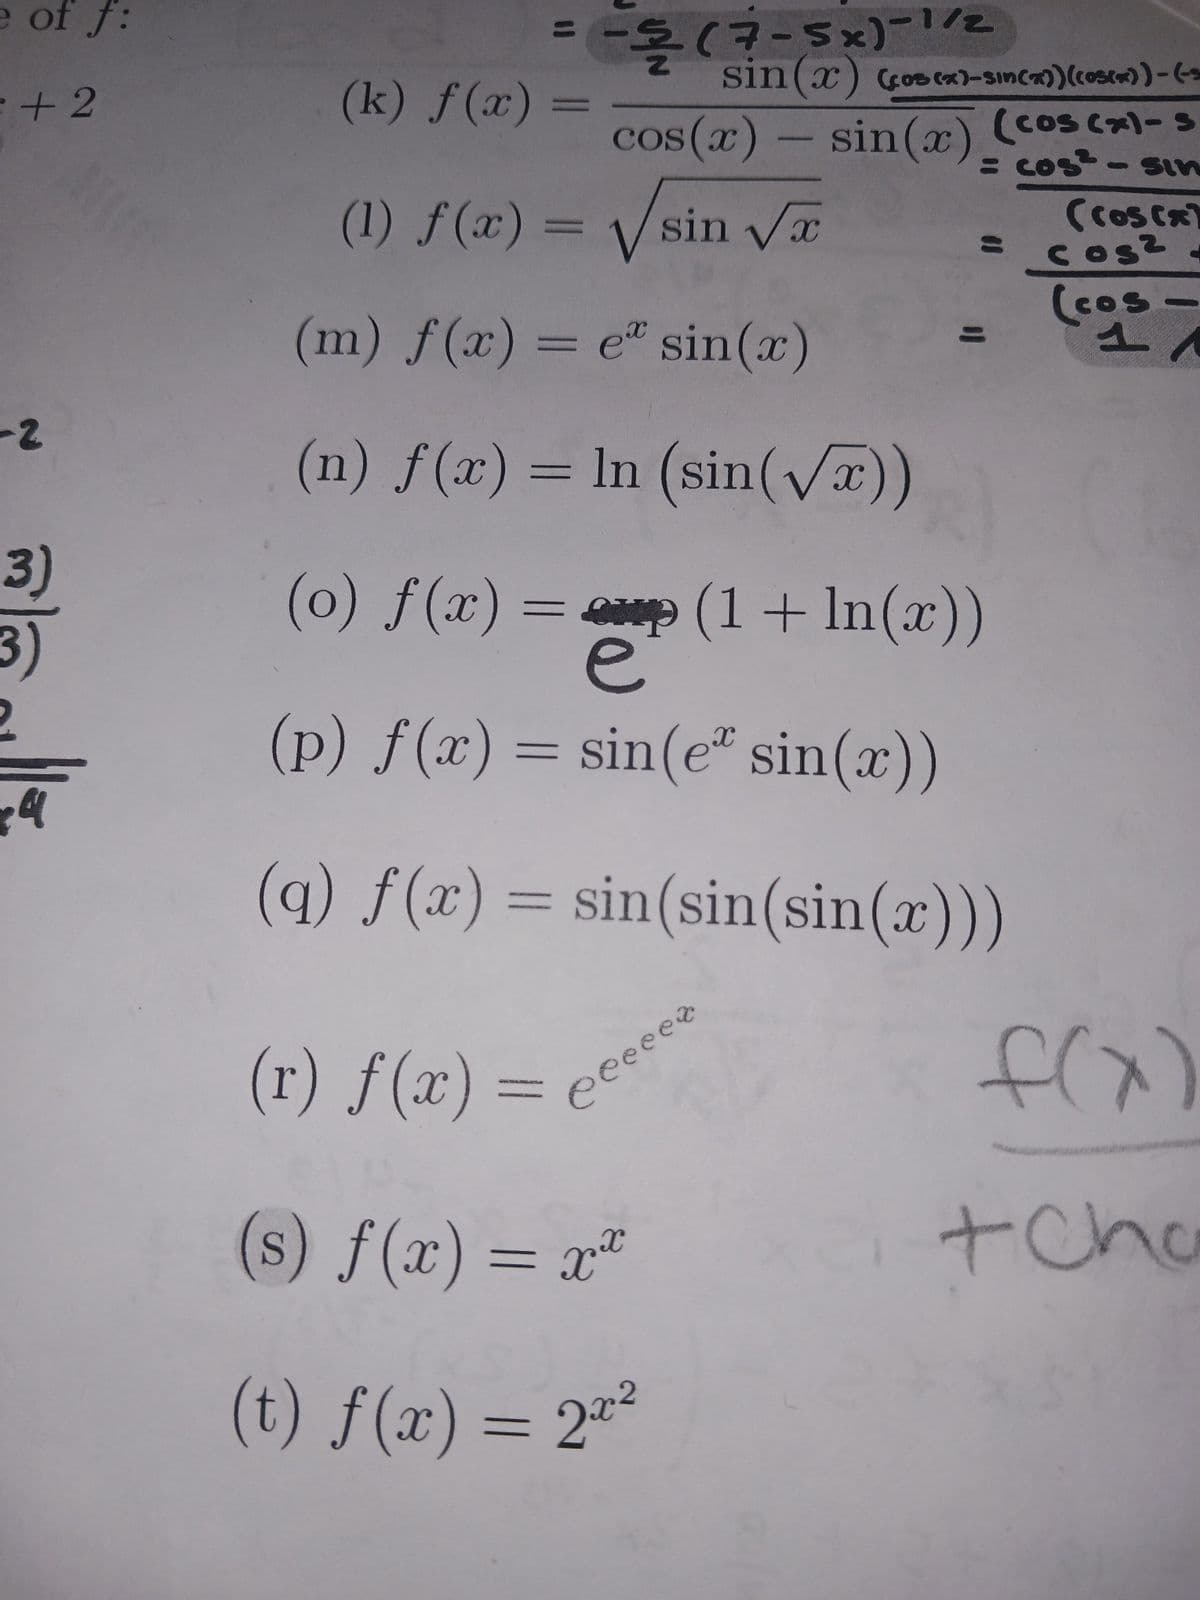 e of f:
+2
-2
3)
3)
-돌
-$(?-sx)-z
sin(x) (cos(x)-sin(x)) (cos(x))-(-3
cos(x) = sin(x) (cos(x)- s
= cost-sin
(k) f(x)
(1) f(x) = √√sin √x
(m) f(x) = e sin(x)
(n) f(x) = ln (sin(√x))
=
(o) f(x) = (1 + In(x))
e
(p) f(x) = sin(e* sin(x))
(q) f(x) = sin(sin(sin(x)))
eeeeer
(cos(x)
= cos² -
(cos-
1
(r) f(x) =
(s) f(x) = x²
(t) f(x) = 2x²
tCho